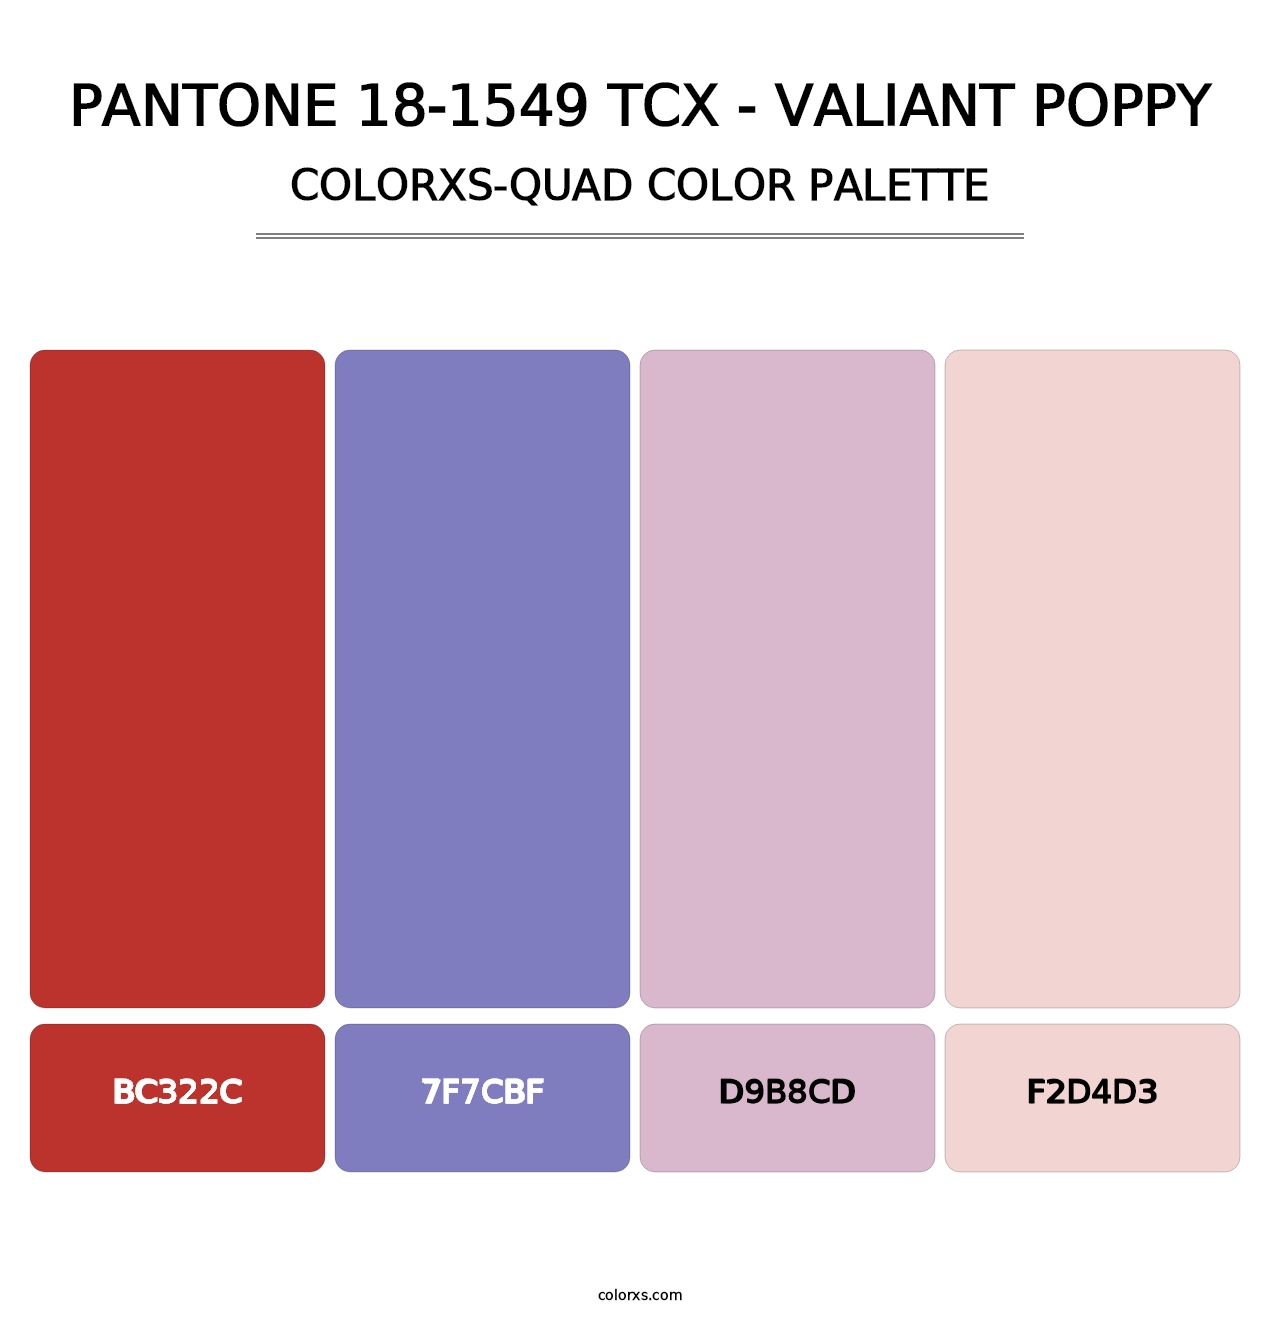 PANTONE 18-1549 TCX - Valiant Poppy - Colorxs Quad Palette